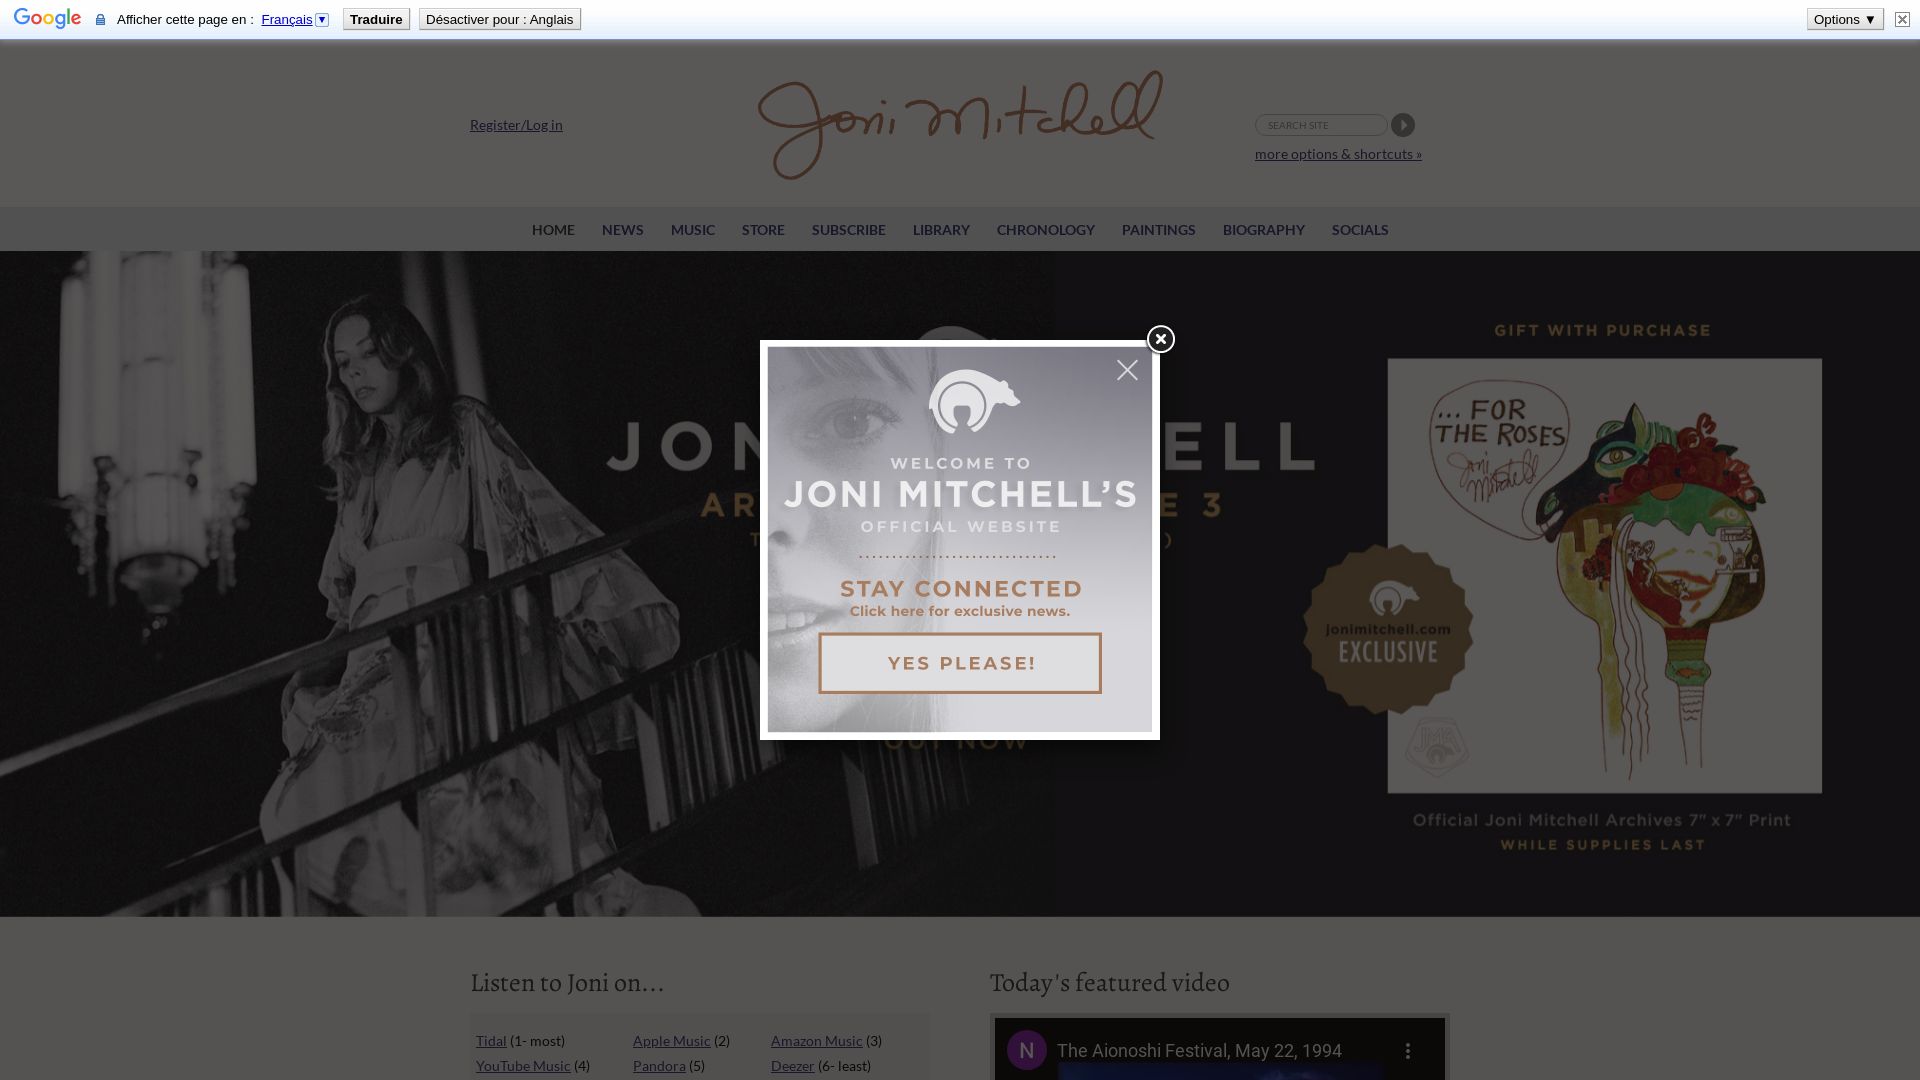 Stato del sito web jonimitchell.com è   ONLINE